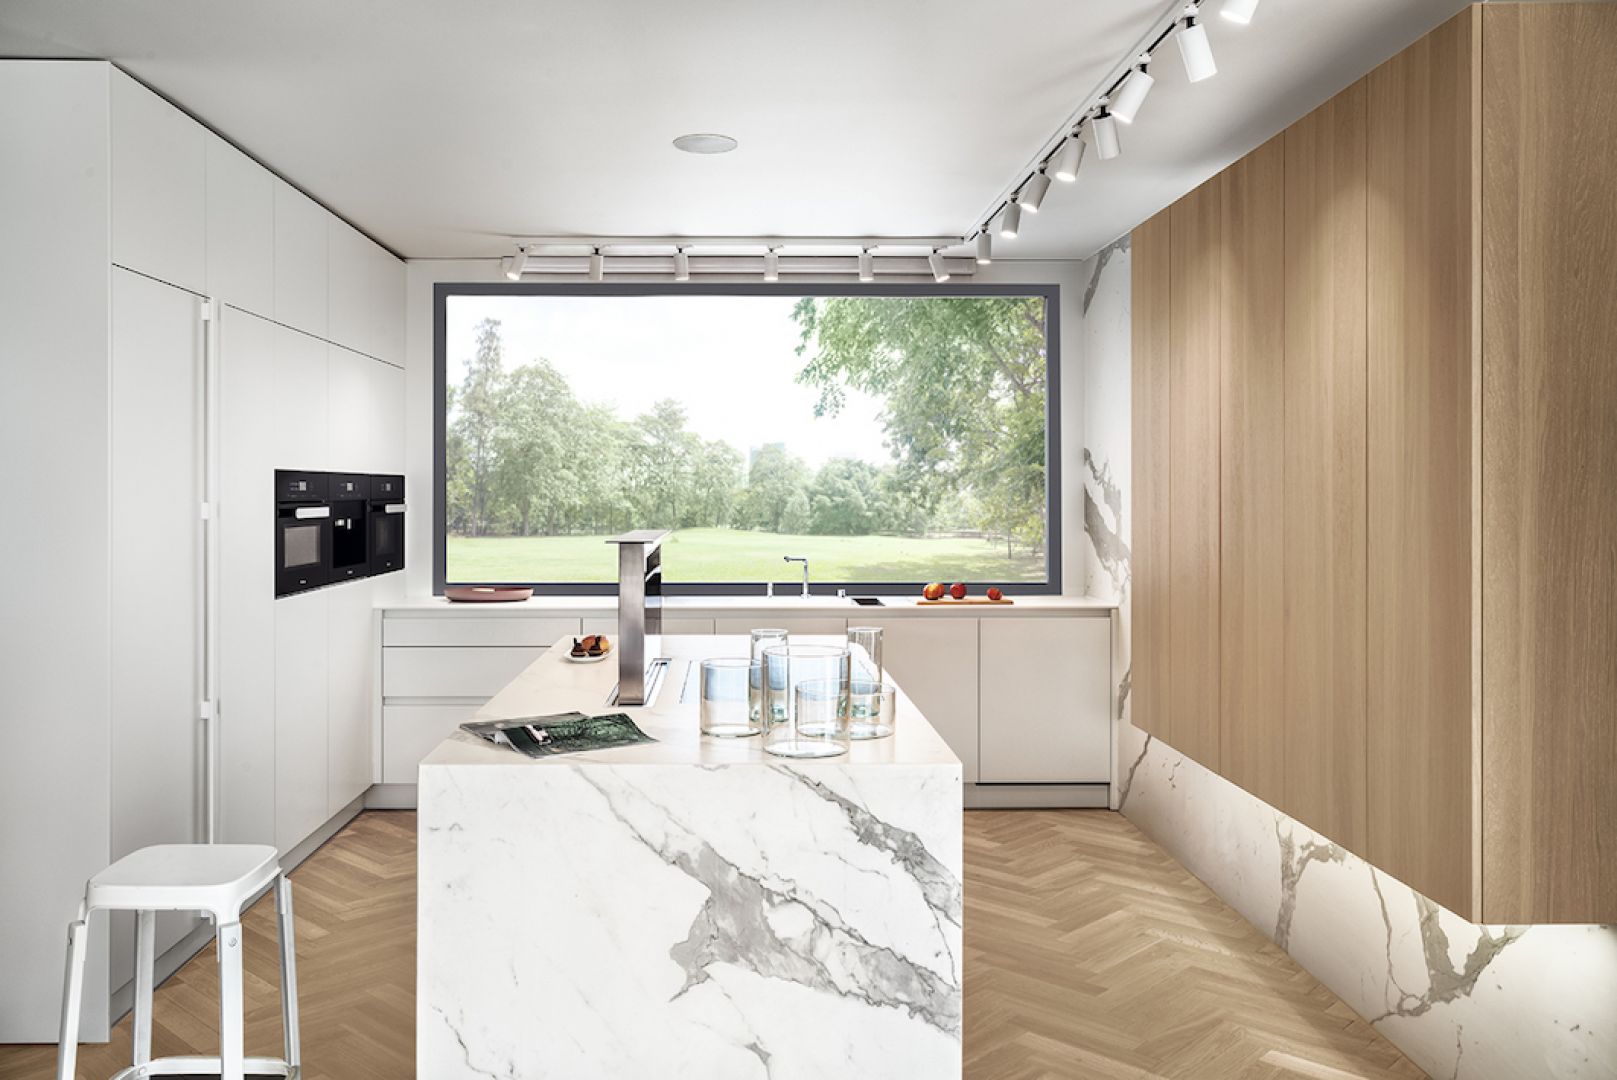 W kuchni Modern biała zabudowa kontrastuje z drewnianą. Fot. Zajc Kuchnie